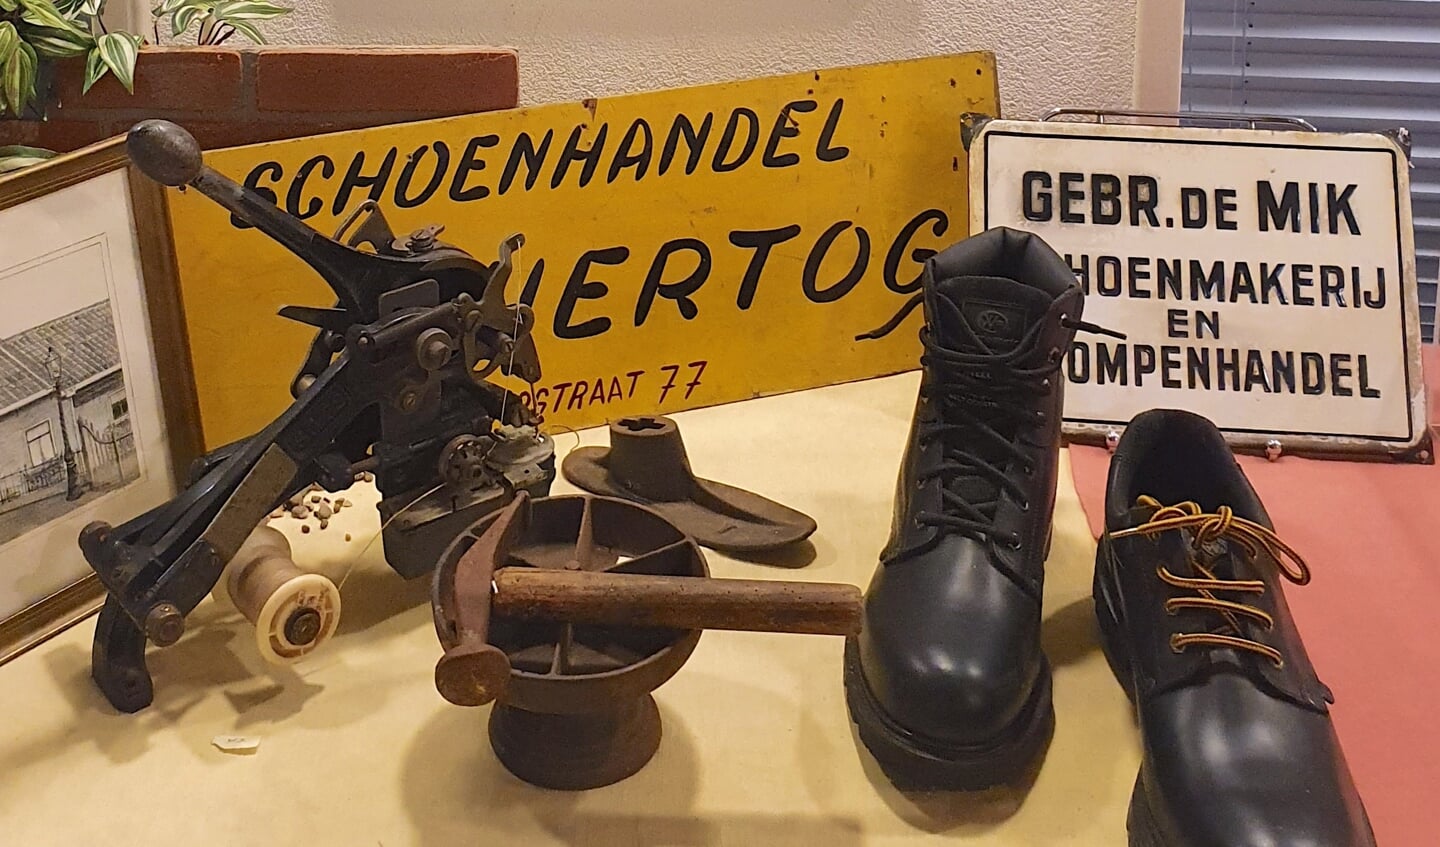 Het 'schoenmakershoekje' in de nieuwe expositie met voorwerpen en foto's van winkeliers en andere middenstanders.